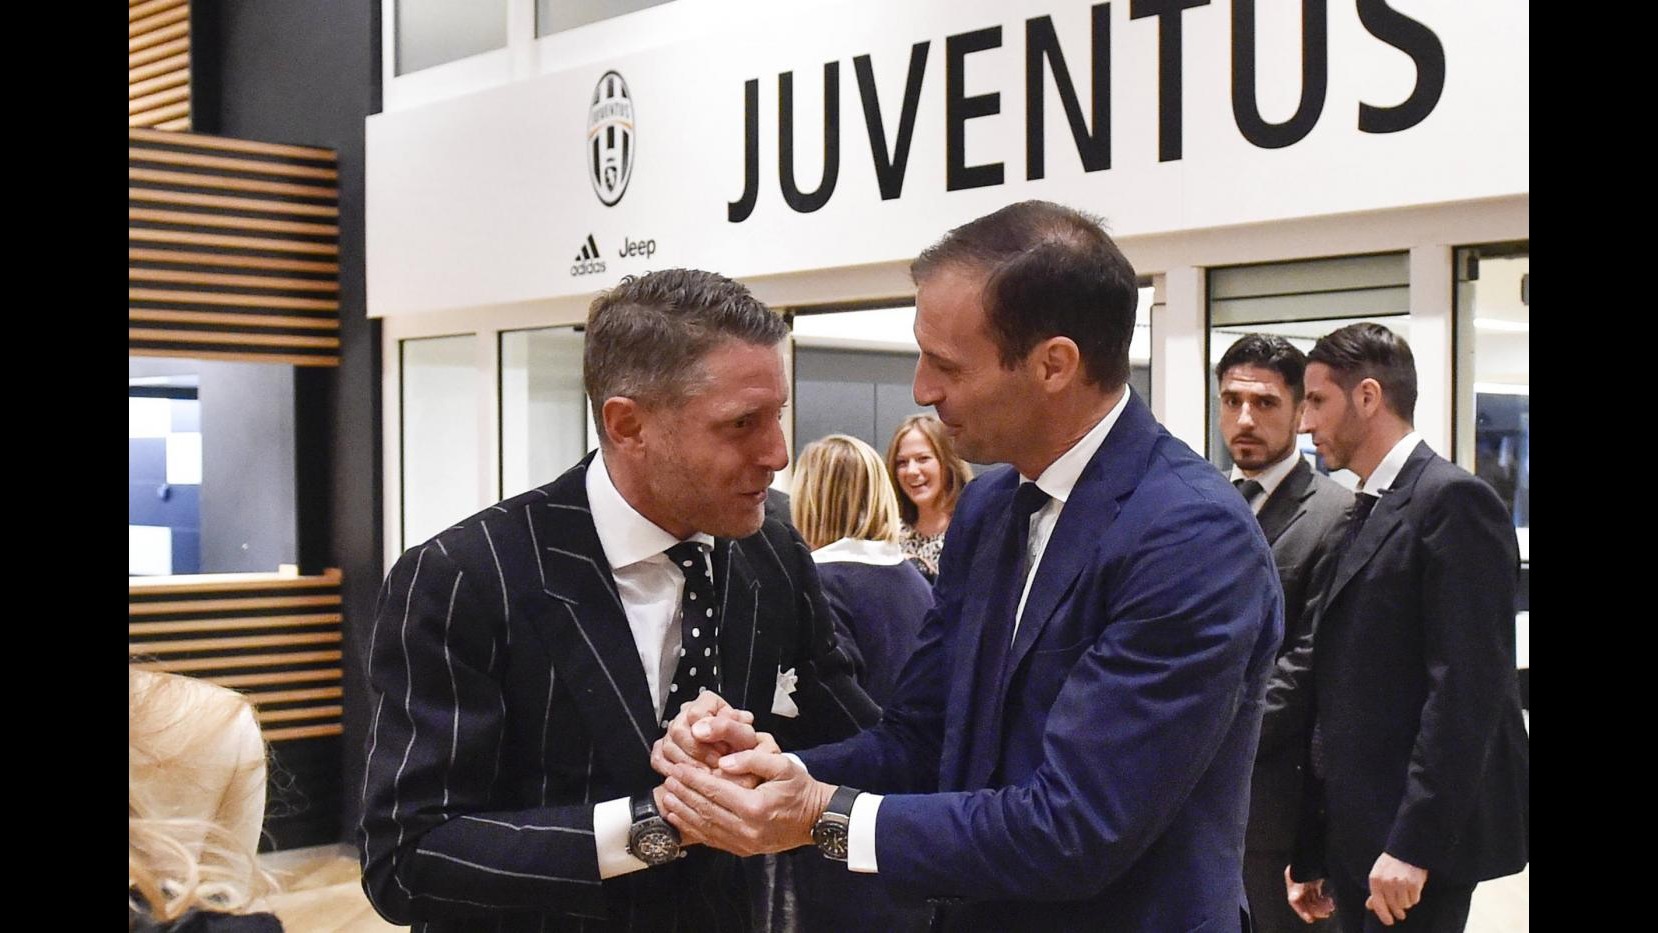 FOTO Tutto il mondo Juve alla première di ‘Bianconeri – Juventus Story’